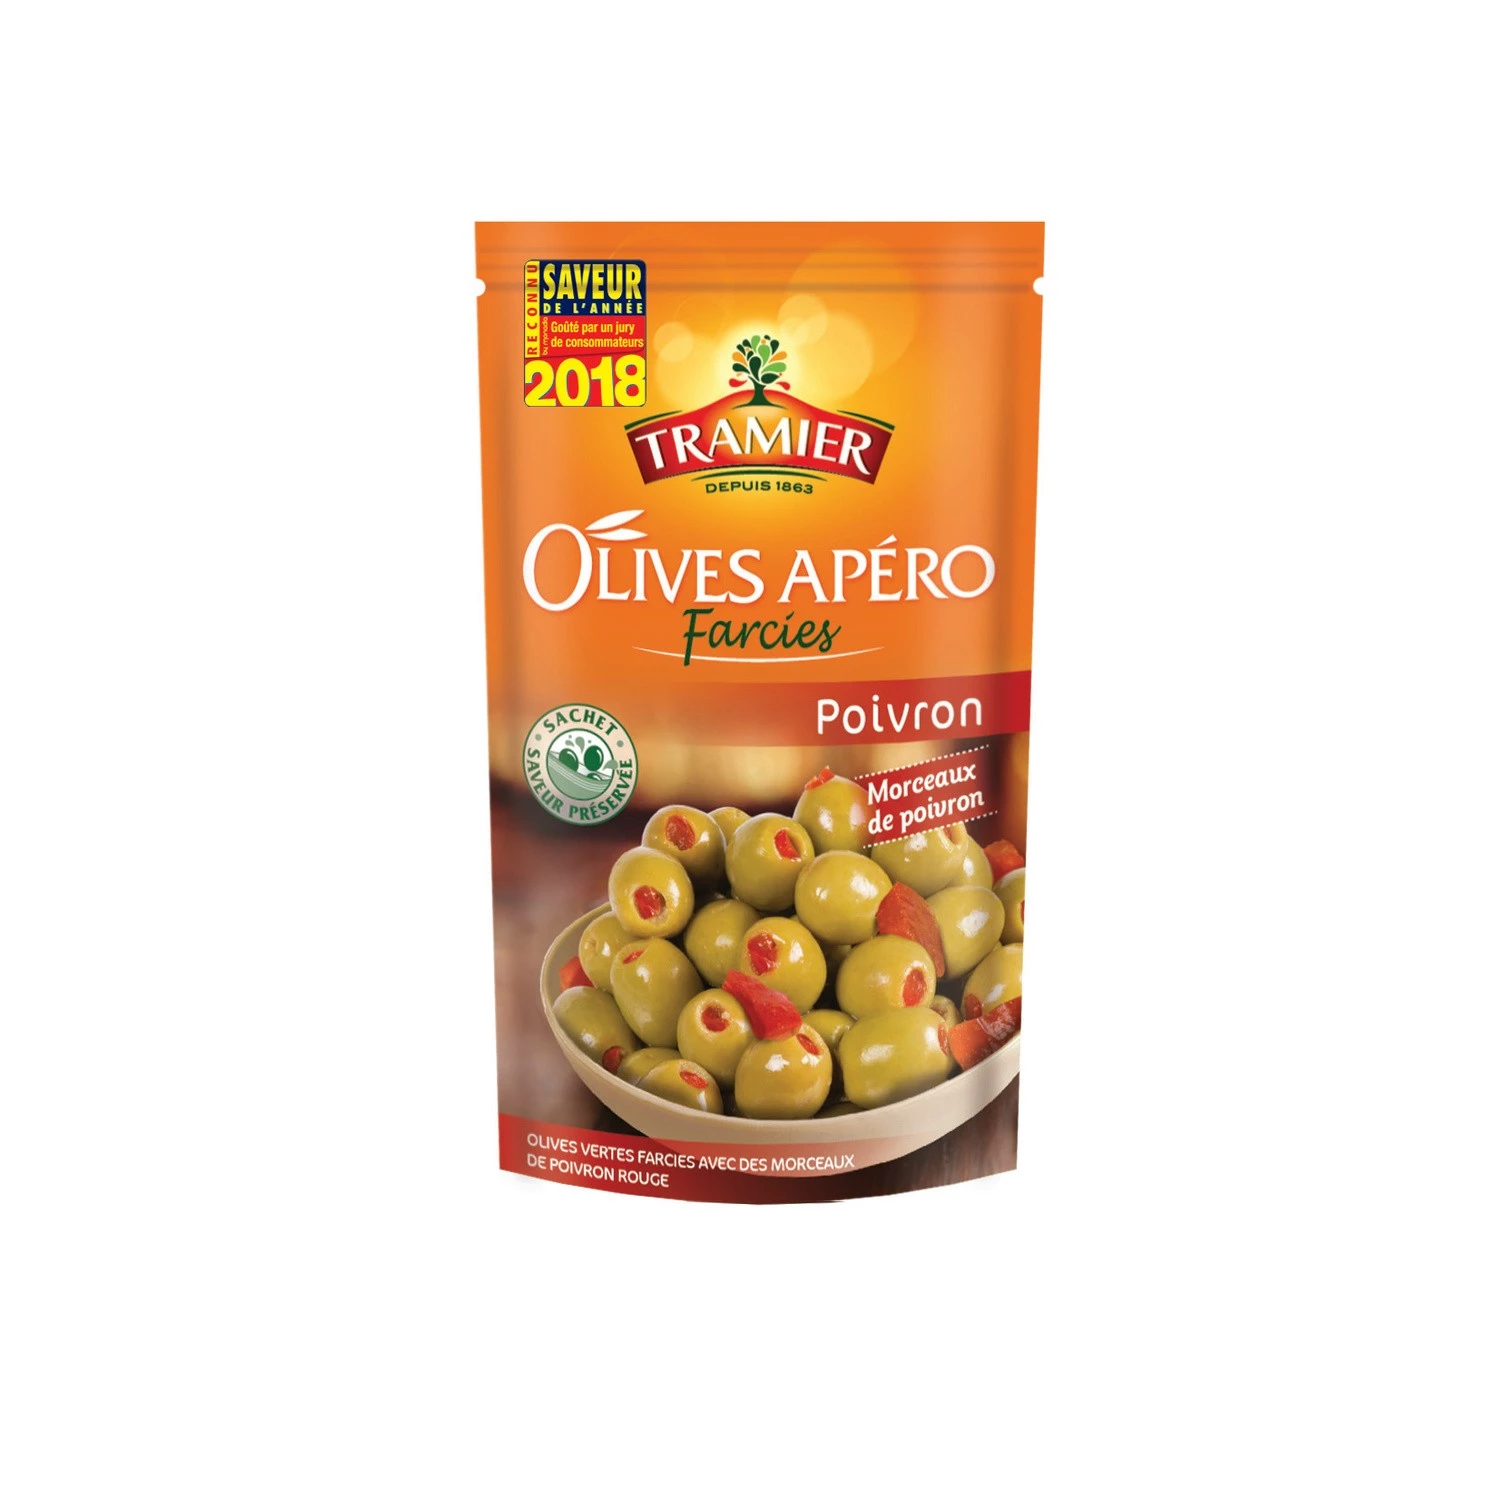 Grüne Oliven gefüllt mit Pfeffer, 130g - TRAMIER